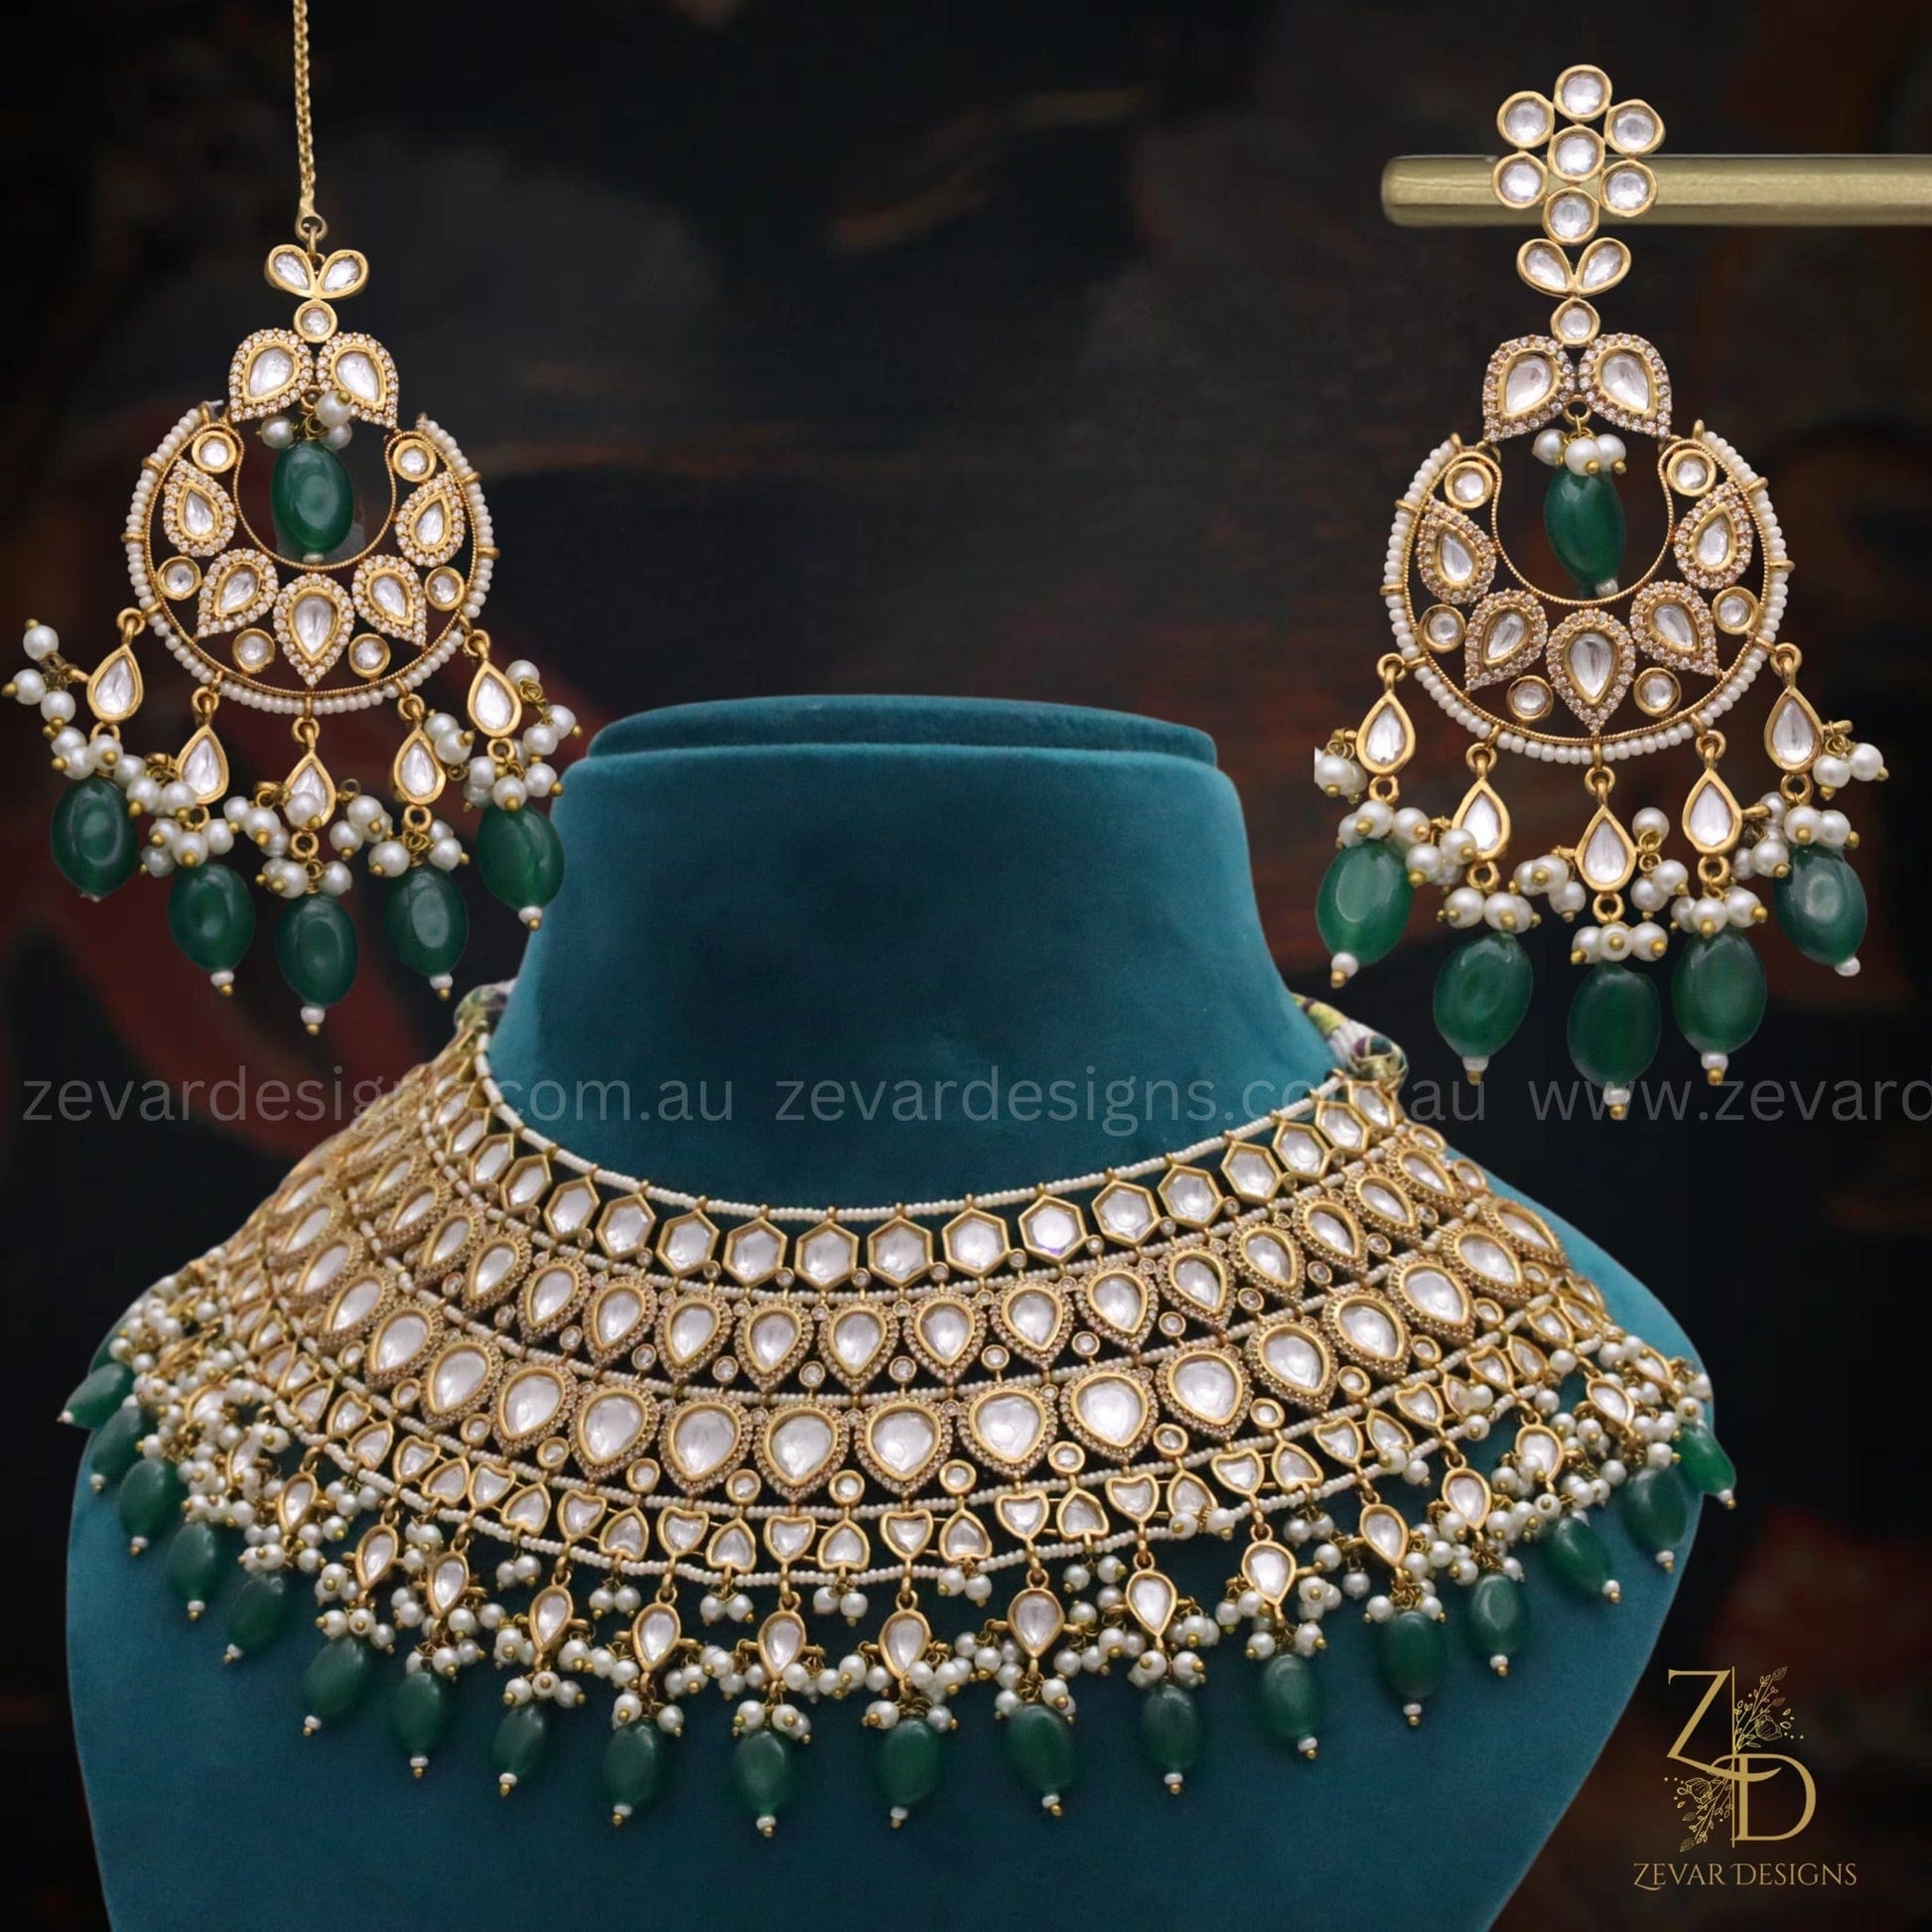 Zevar Designs Designer Necklace Sets Polki & AD Necklace set with Emerald green drops - Mehndi Finish